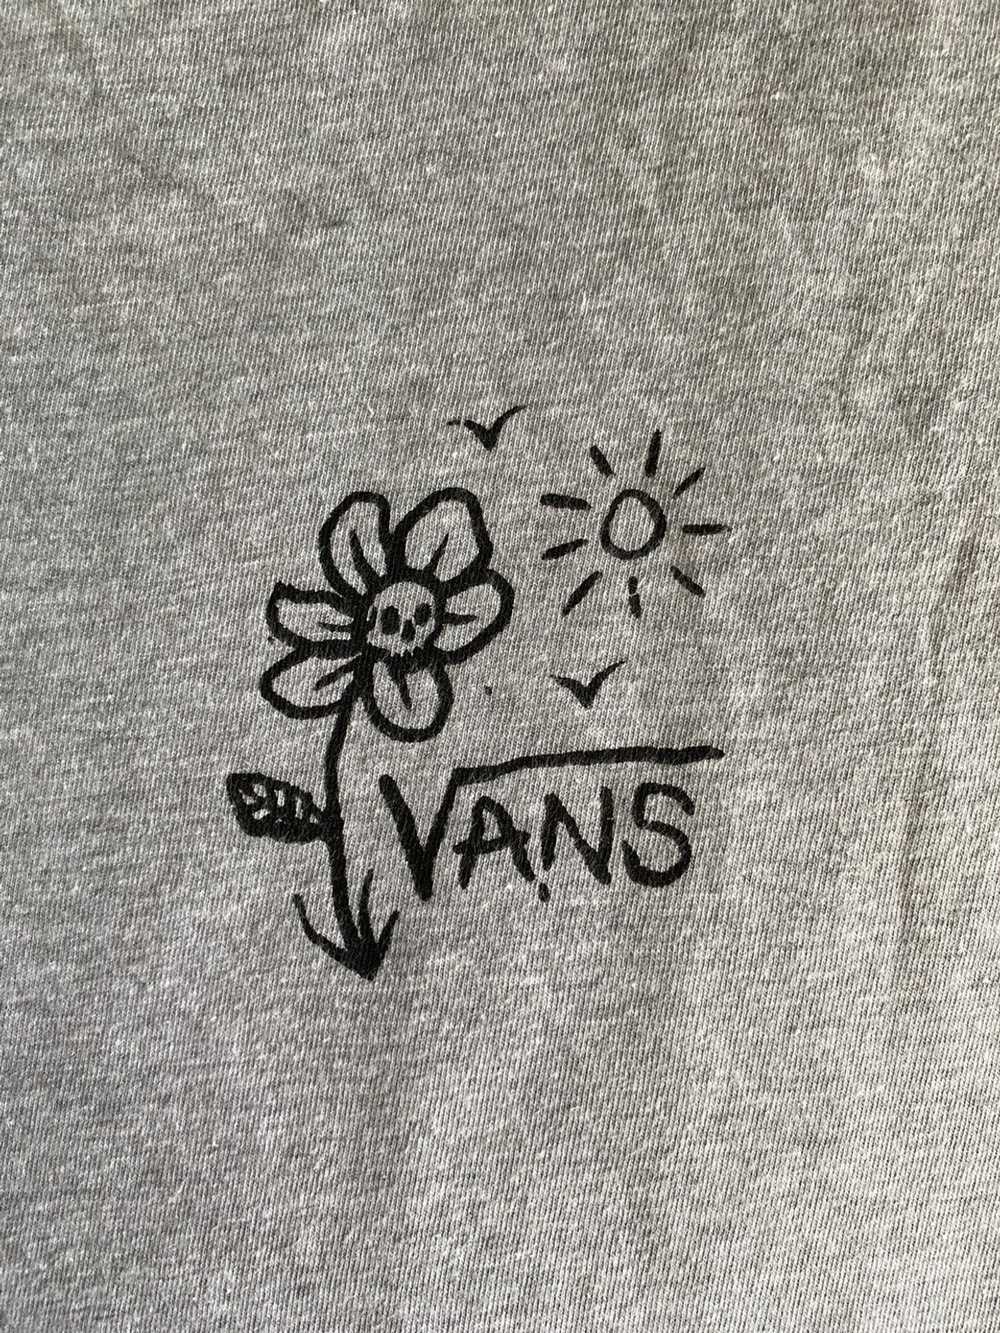 Vans Vans Long Sleeve - image 3